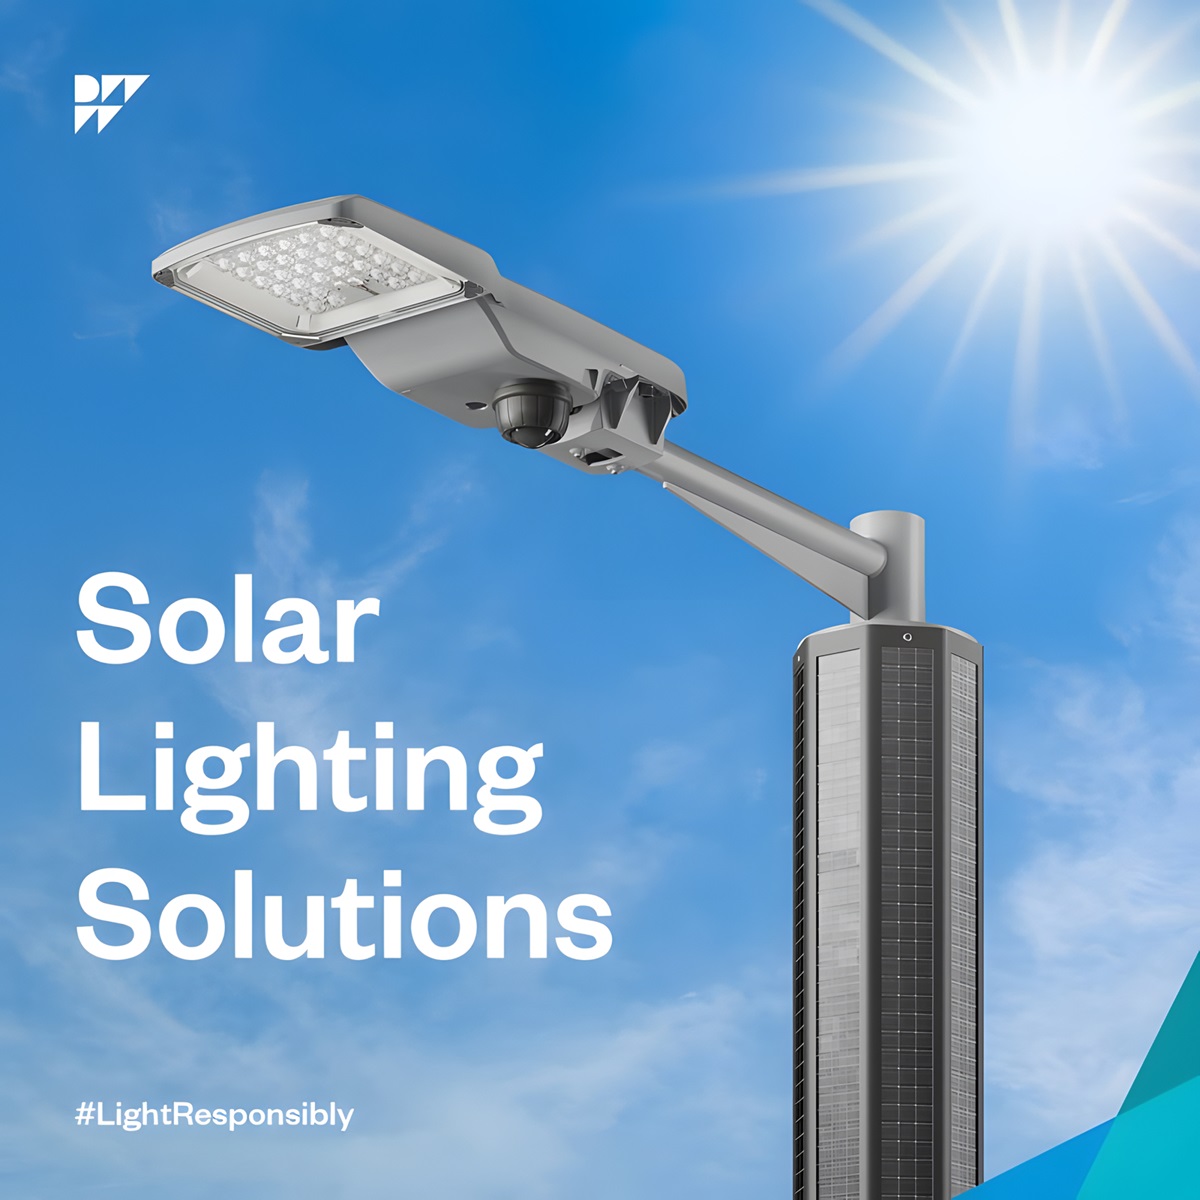 DW Windsor Announces New Range of Solar Lighting Solutions